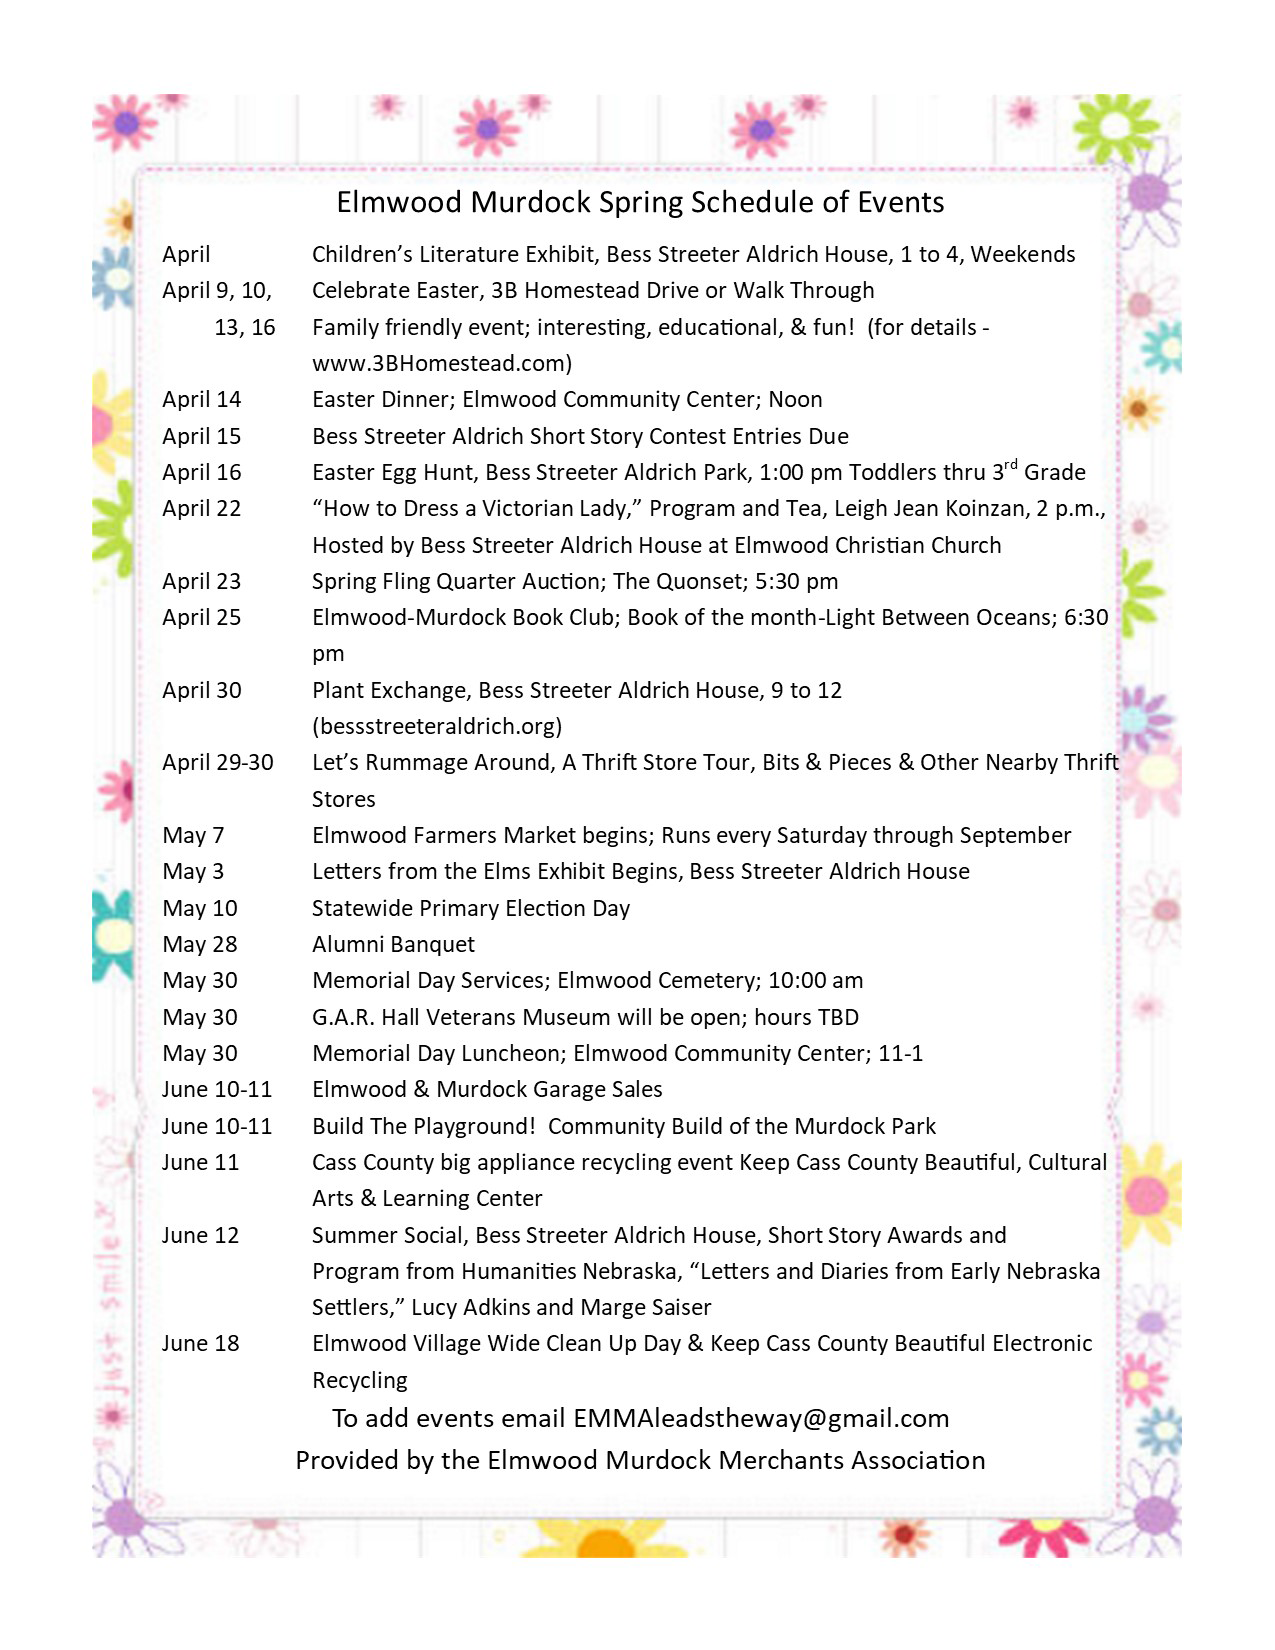 2022 Elmwood Murdock Spring Schedule of EventsSM